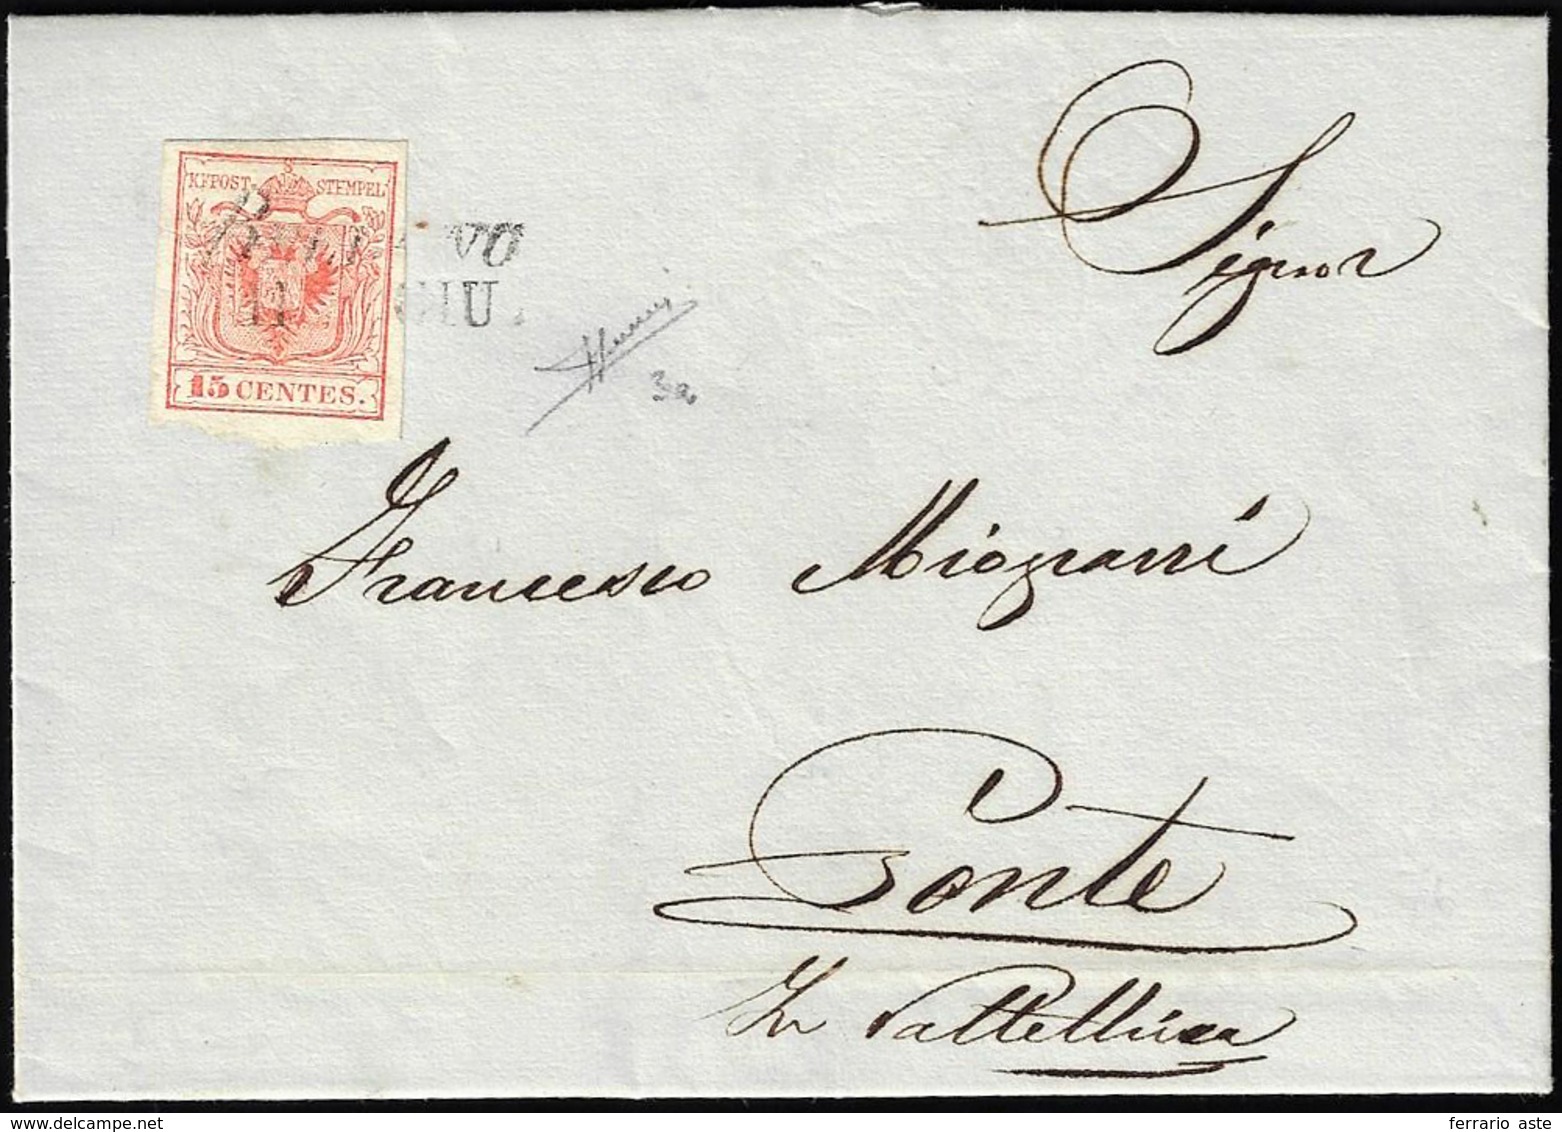 BELLANO, SI Ig Punti 6 - 15 Cent. (3a), Perfetto, Su Lettera Dell'11/6/1850, Primo Mese D'uso, A Pon... - Lombardy-Venetia